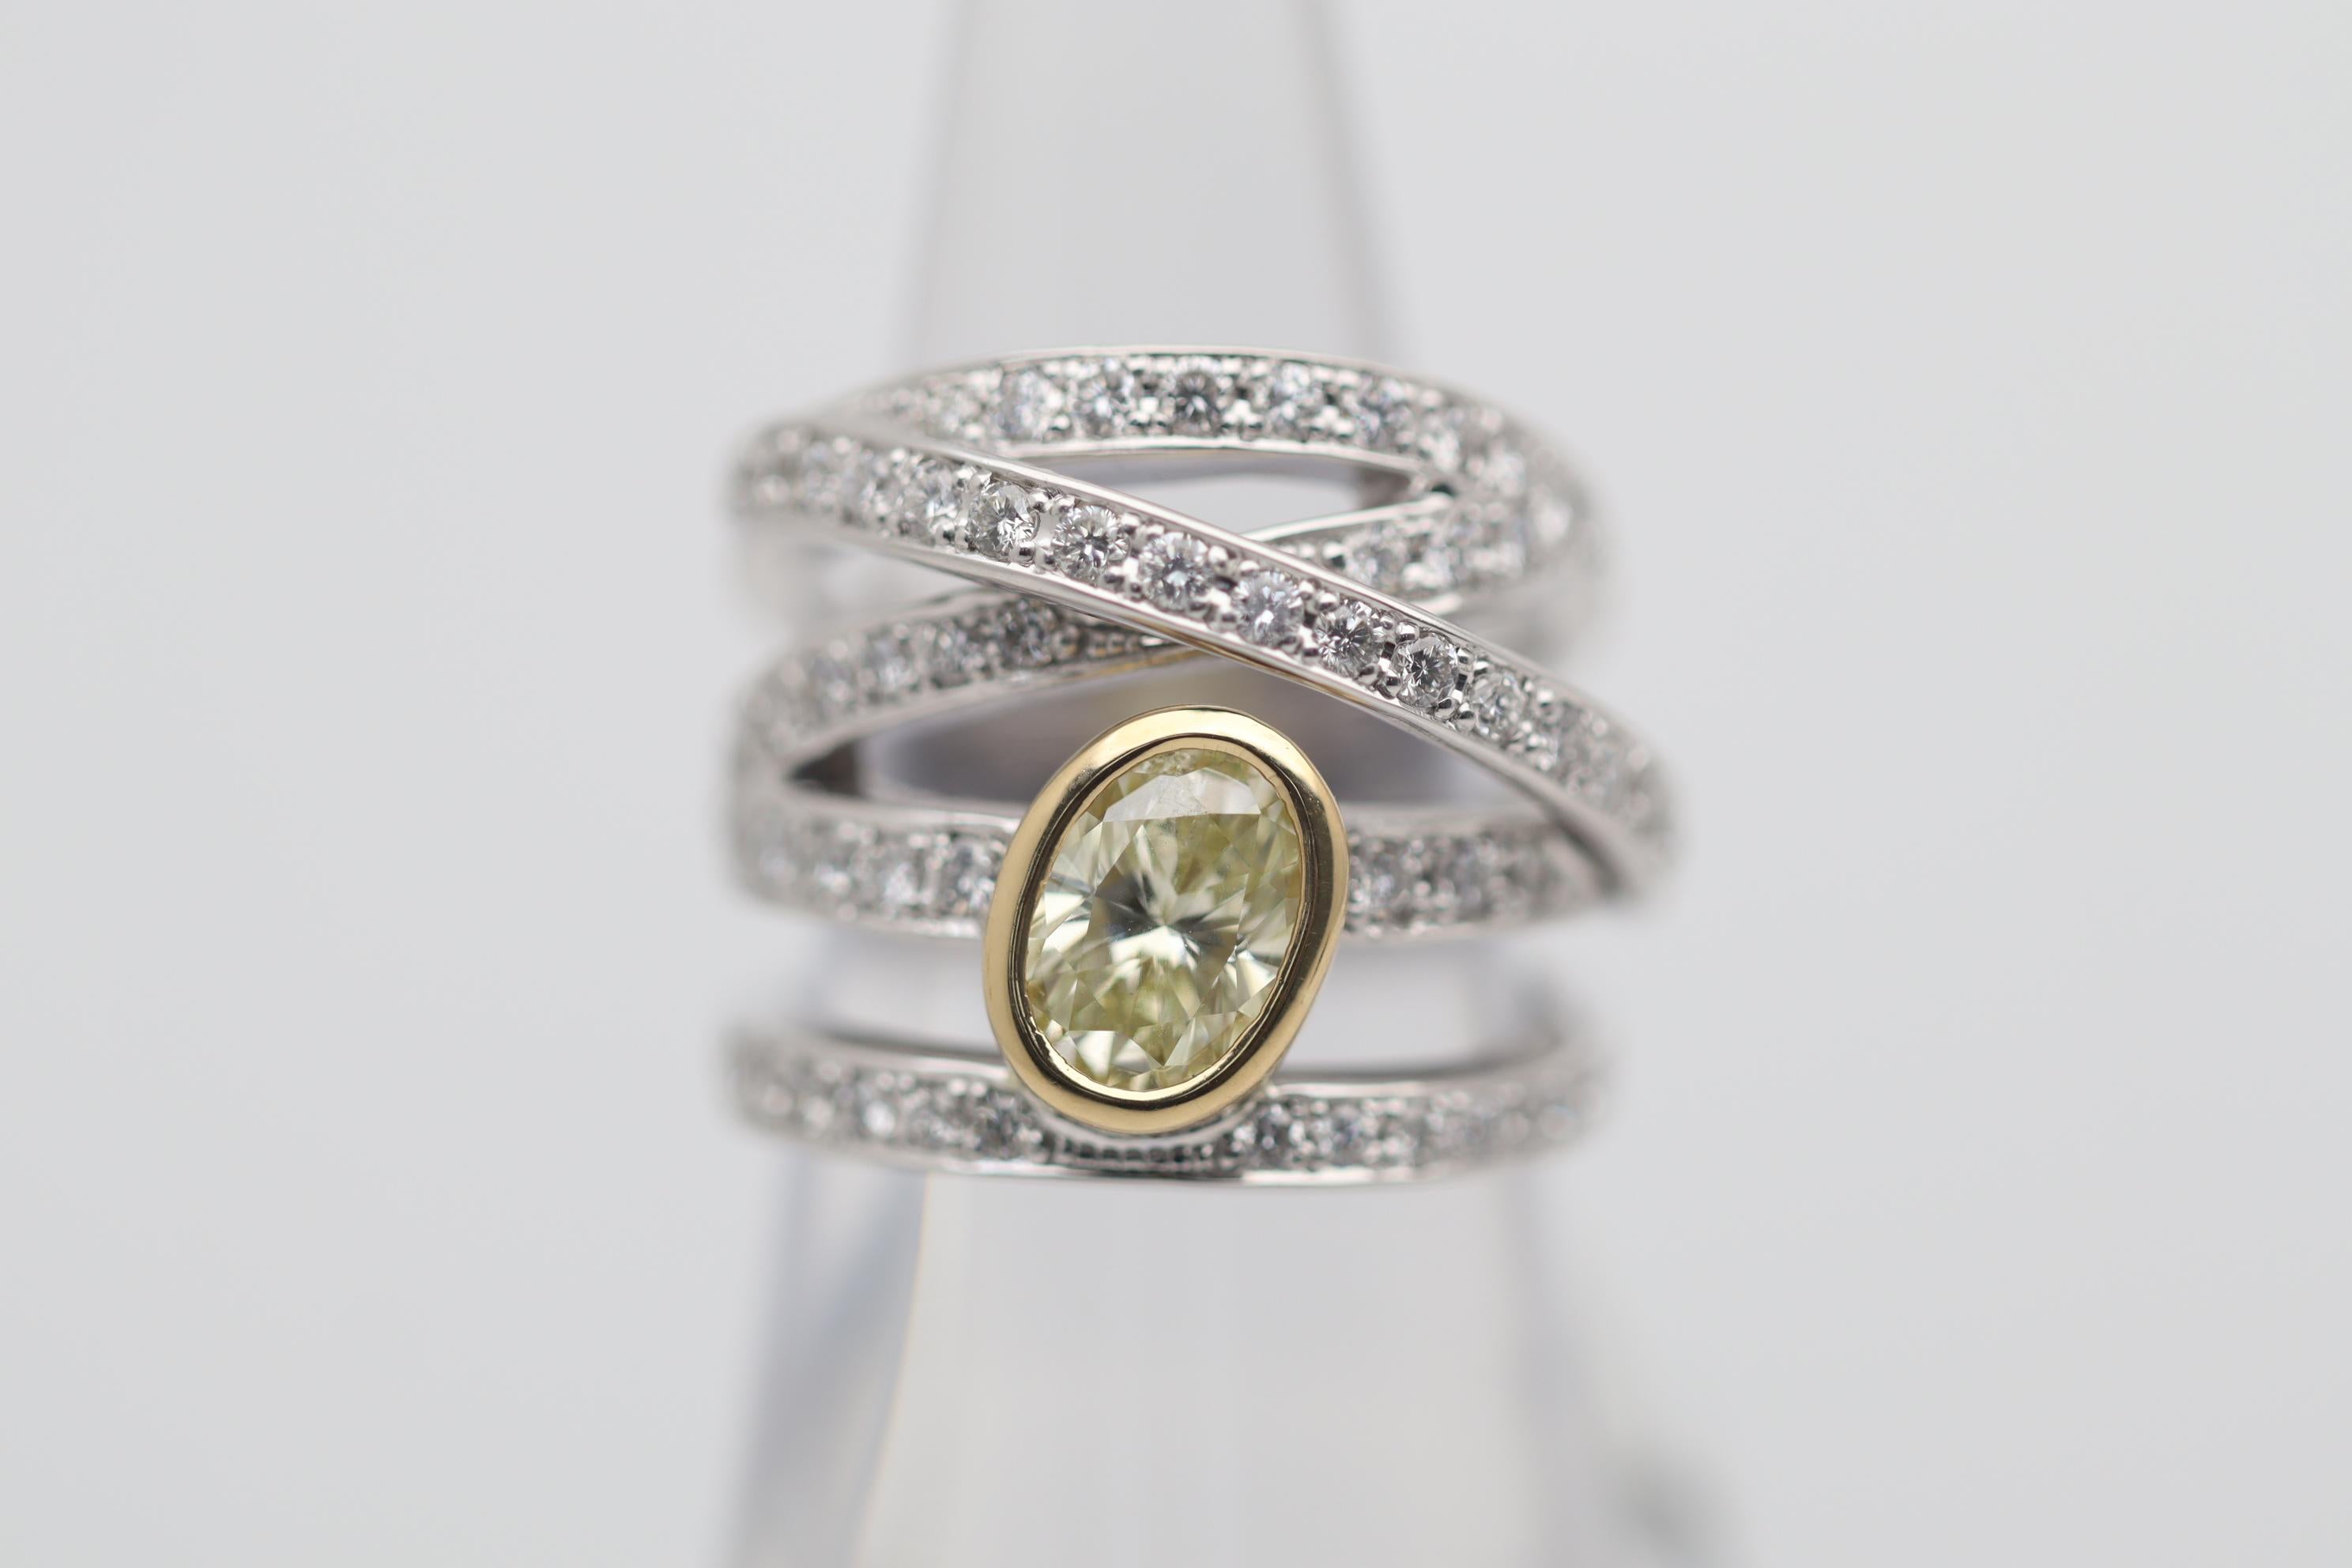 Ein lustiger und stilvoller Ring mit einem gelben Fancy-Diamanten von 1,23 Karat. Er hat eine schöne ovale Form und ist in 18 Karat Gelbgold gefasst, um die natürliche Farbe des Steins zu ergänzen. Hinzu kommen 1,18 Karat strahlend weiße, runde